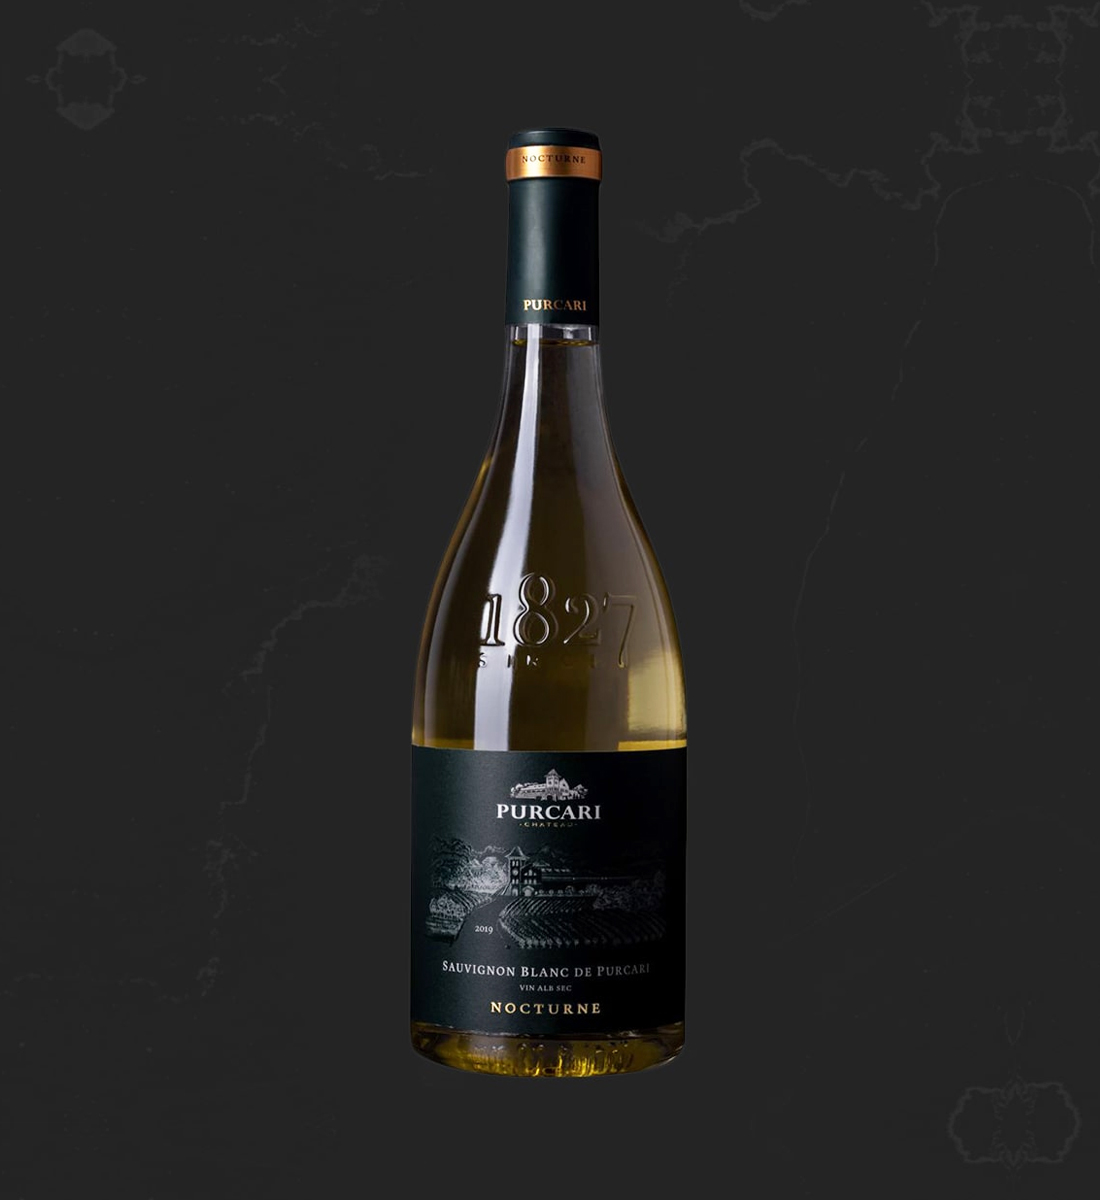 Purcari Nocturne Sauvignon Blanc de Purcari - Vin Sec Alb - Republica Moldova - 0.75L